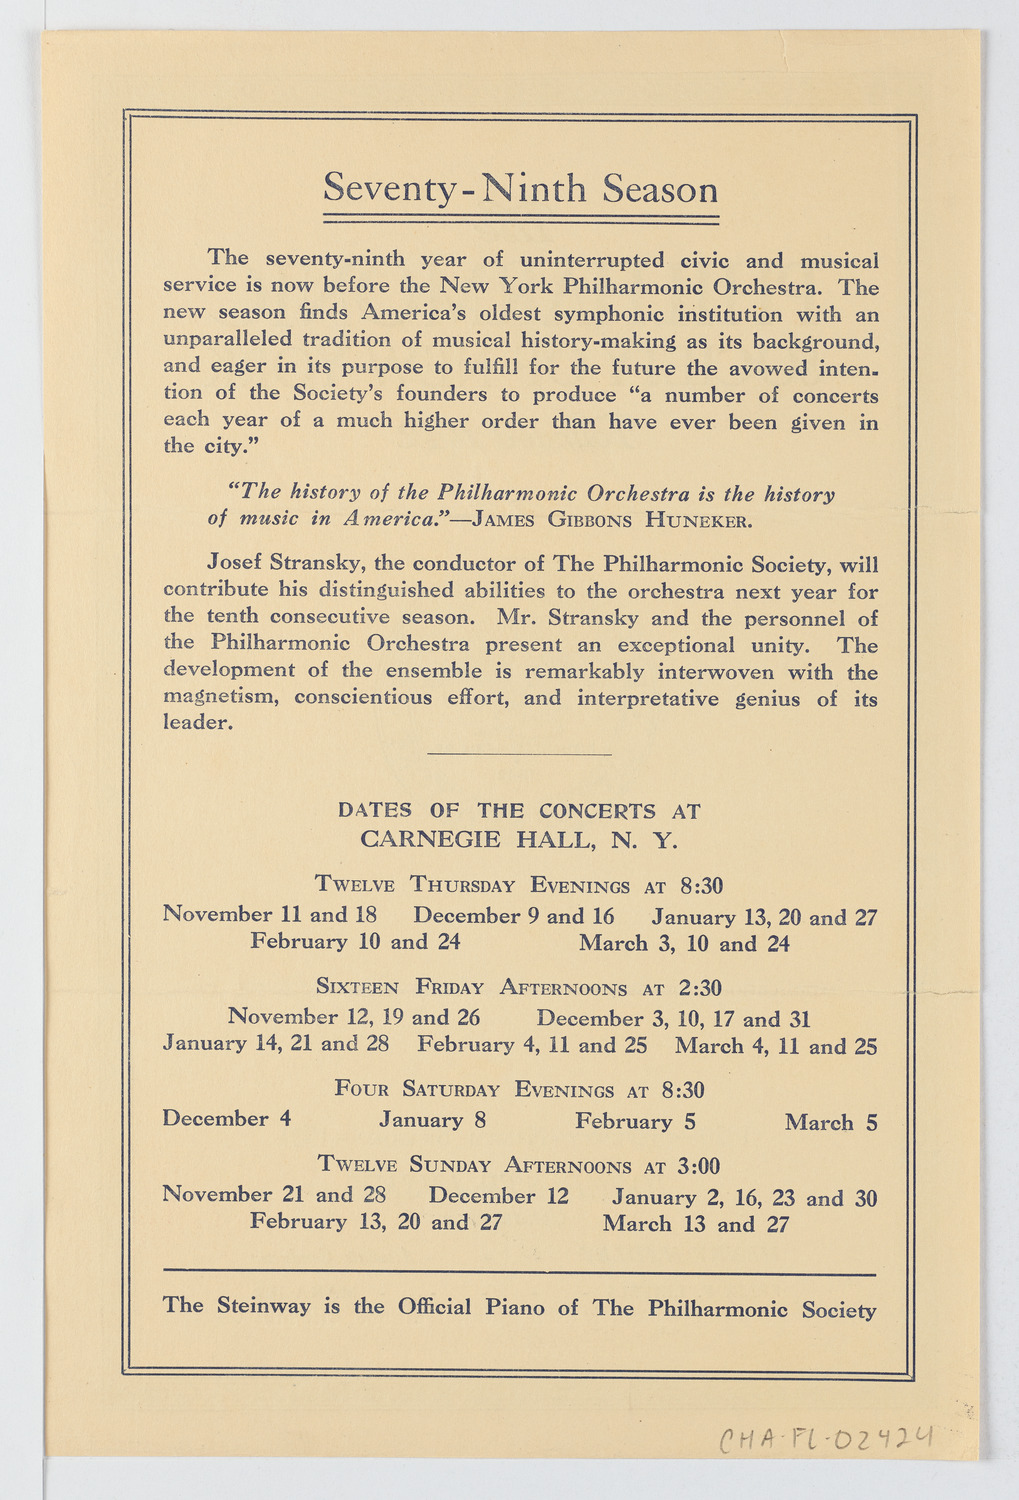 New York Philharmonic, 1920-1921